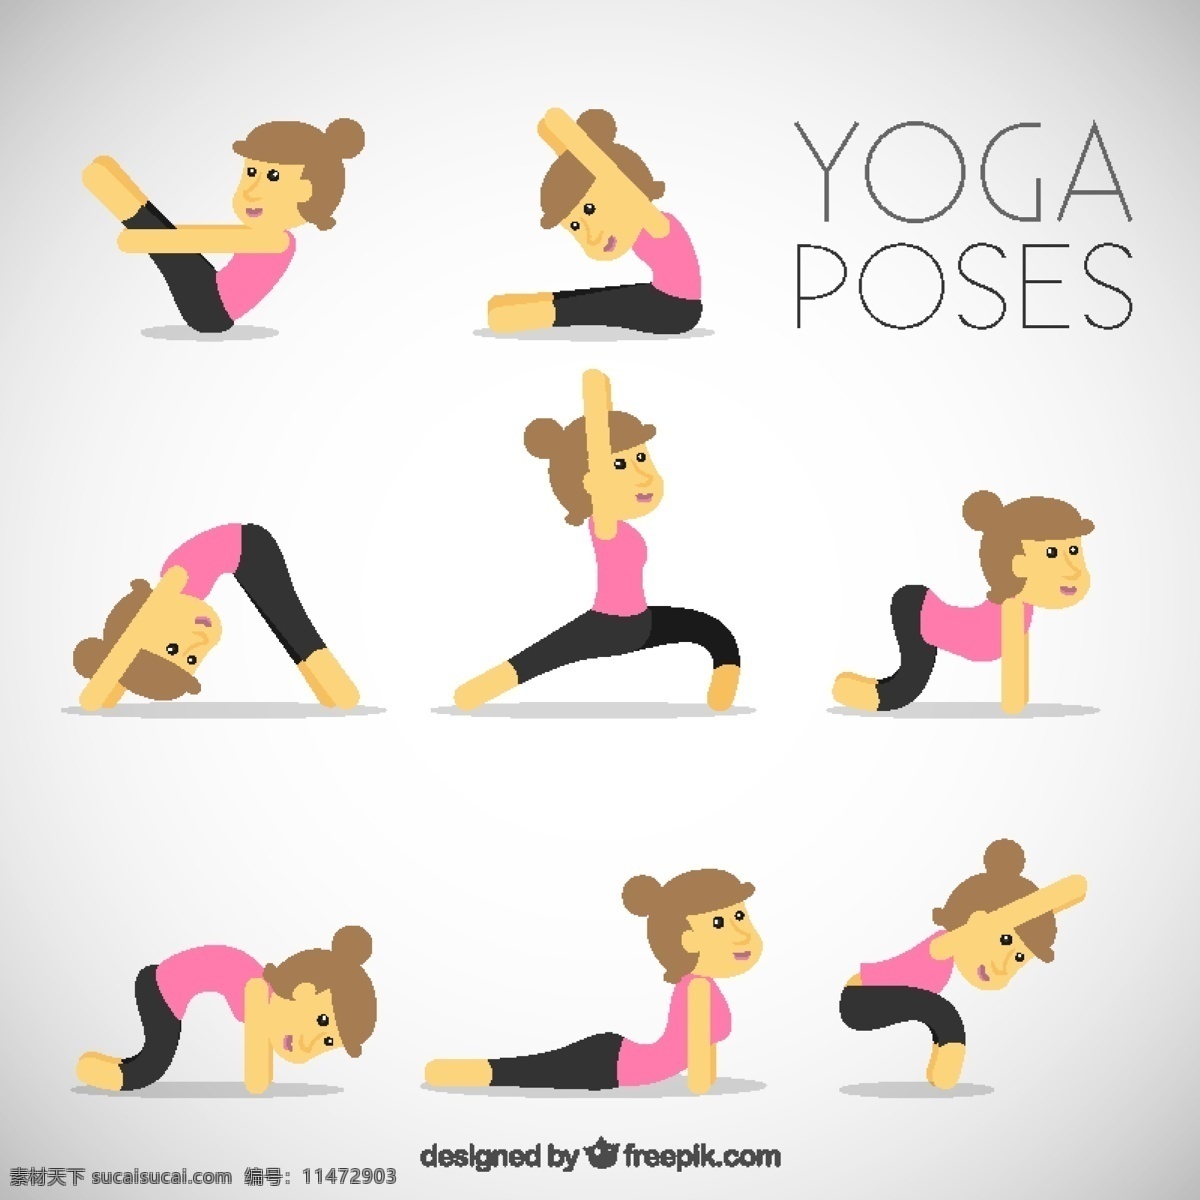 做 瑜伽 好 女人 健康 可爱 人 颜色 和平 运动 有趣 平衡 思想 人体 放松 生活方式 位置 锻炼 弹性 白色